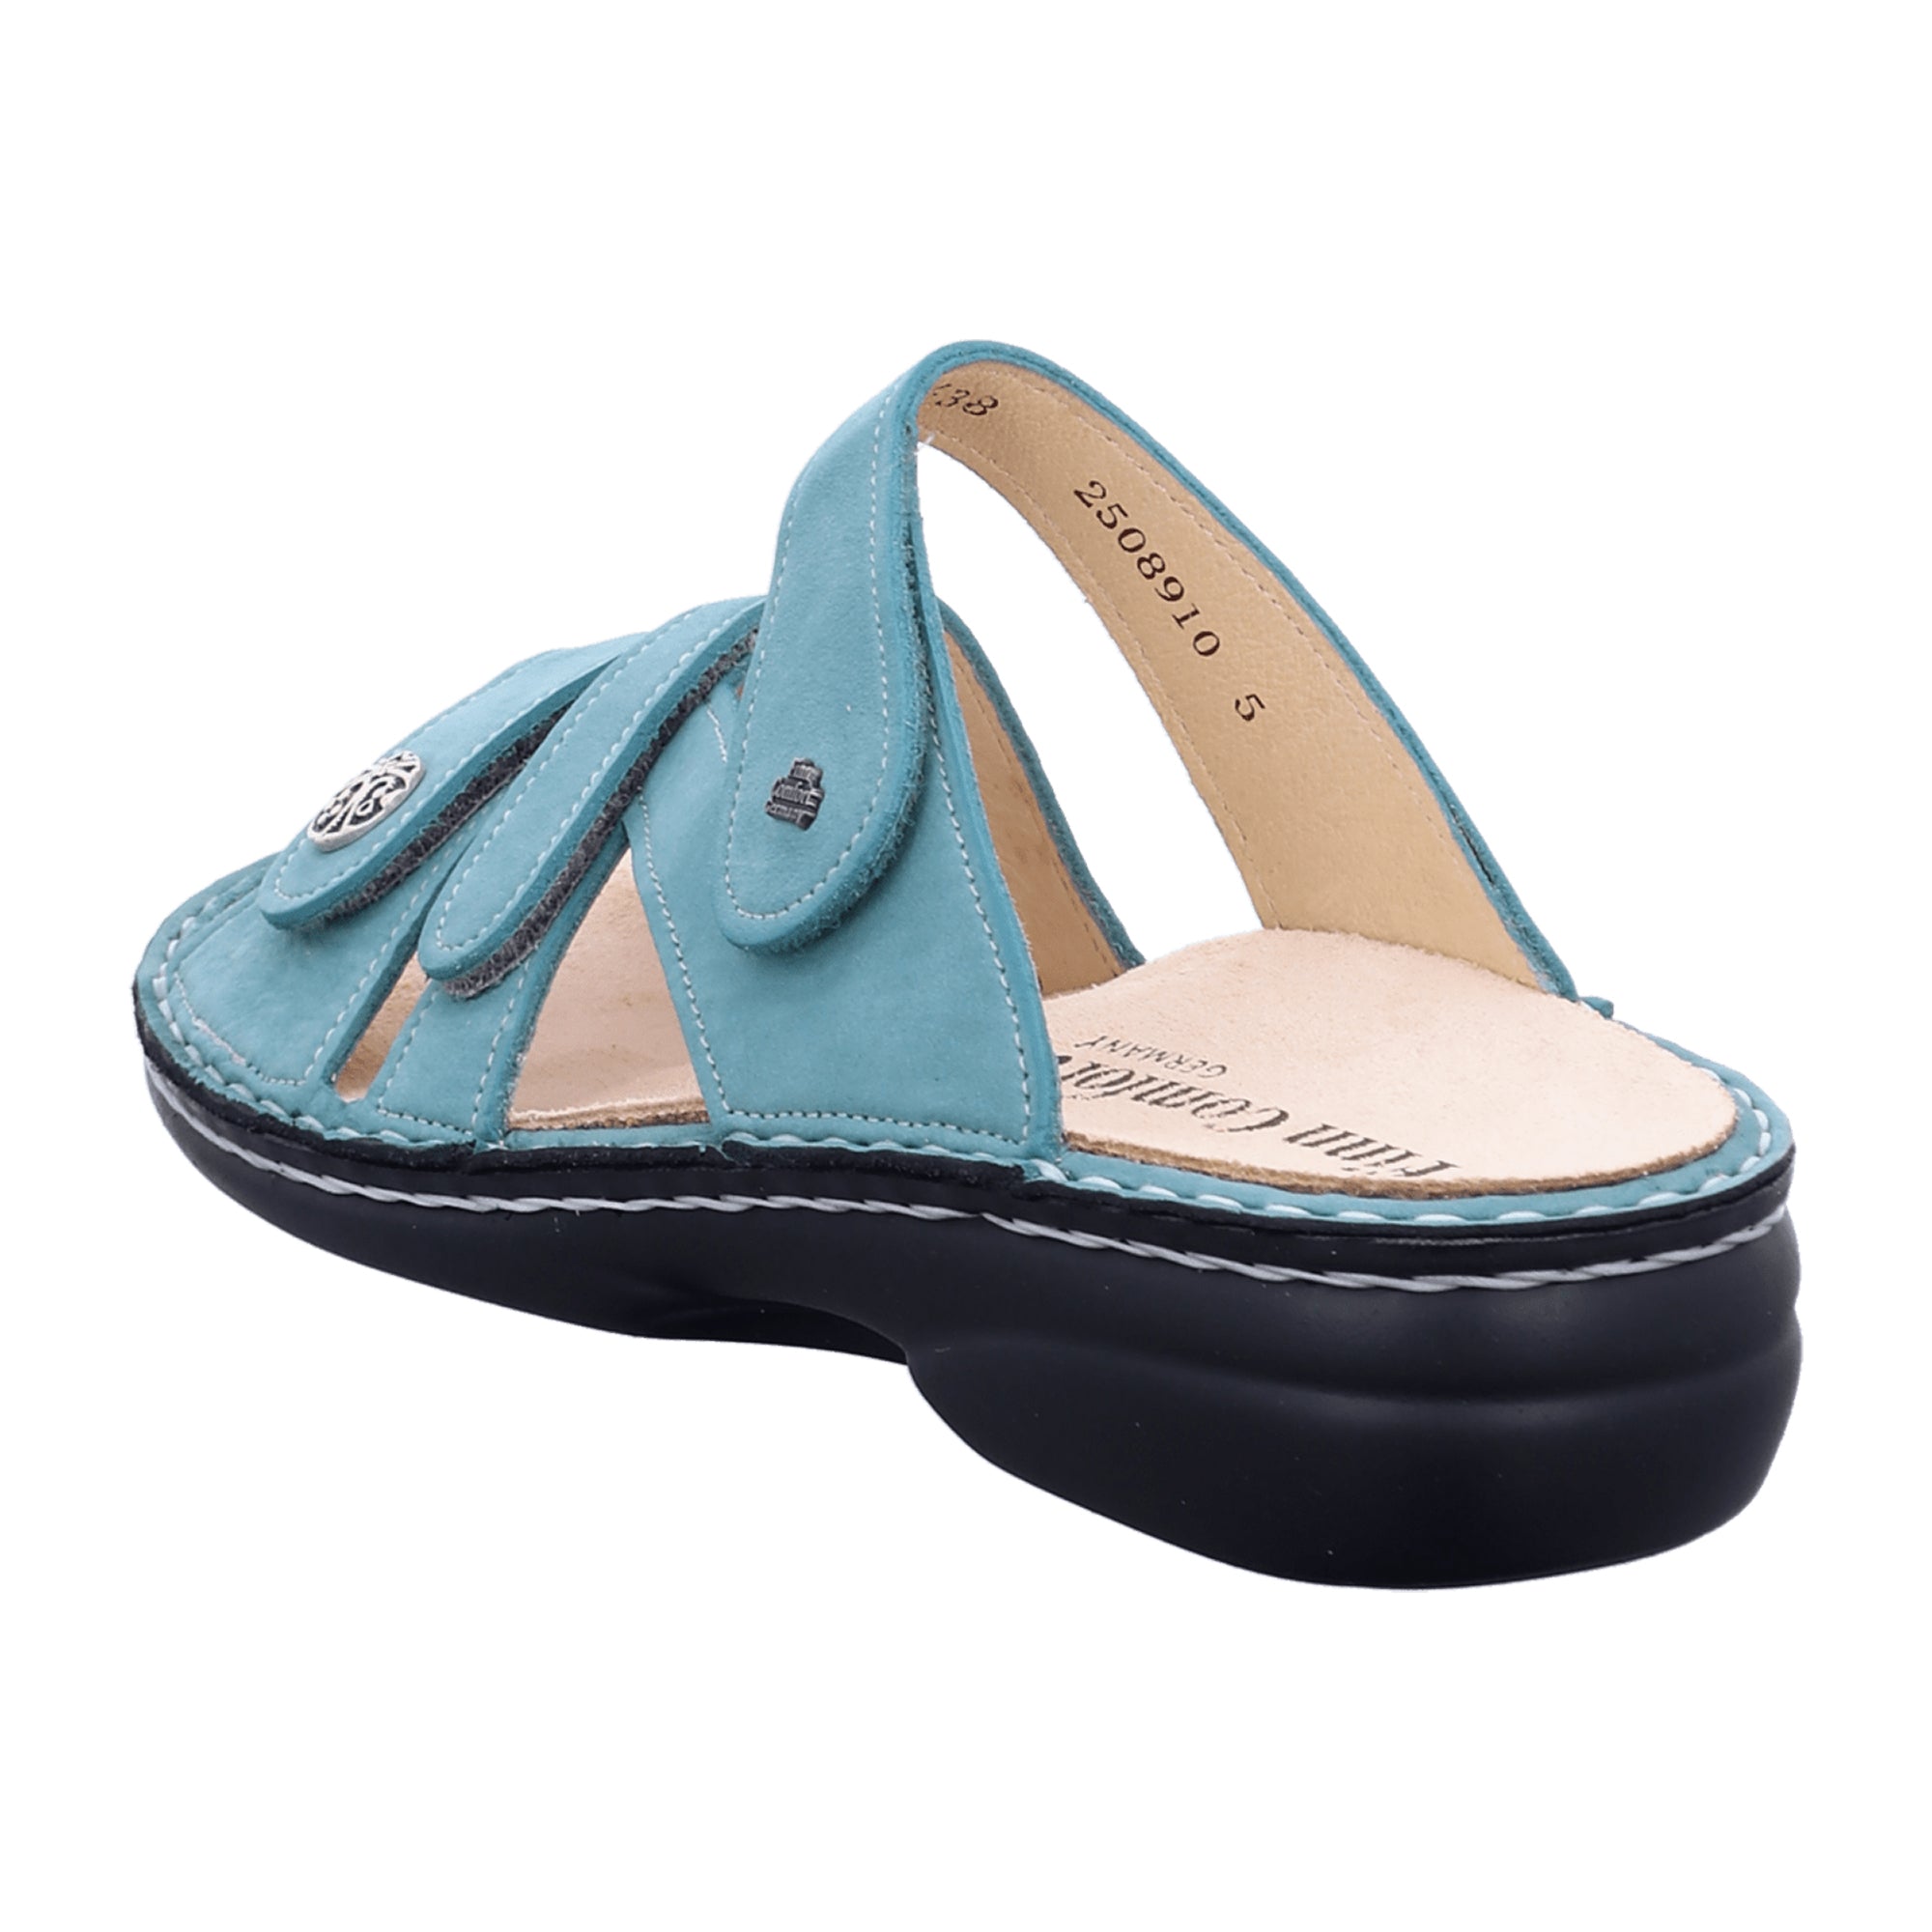 Finn Comfort Ventura-S Women's Comfort Slide Sandals in Ice Green Nubuck Leather, Adjustable Straps - 82568-007484